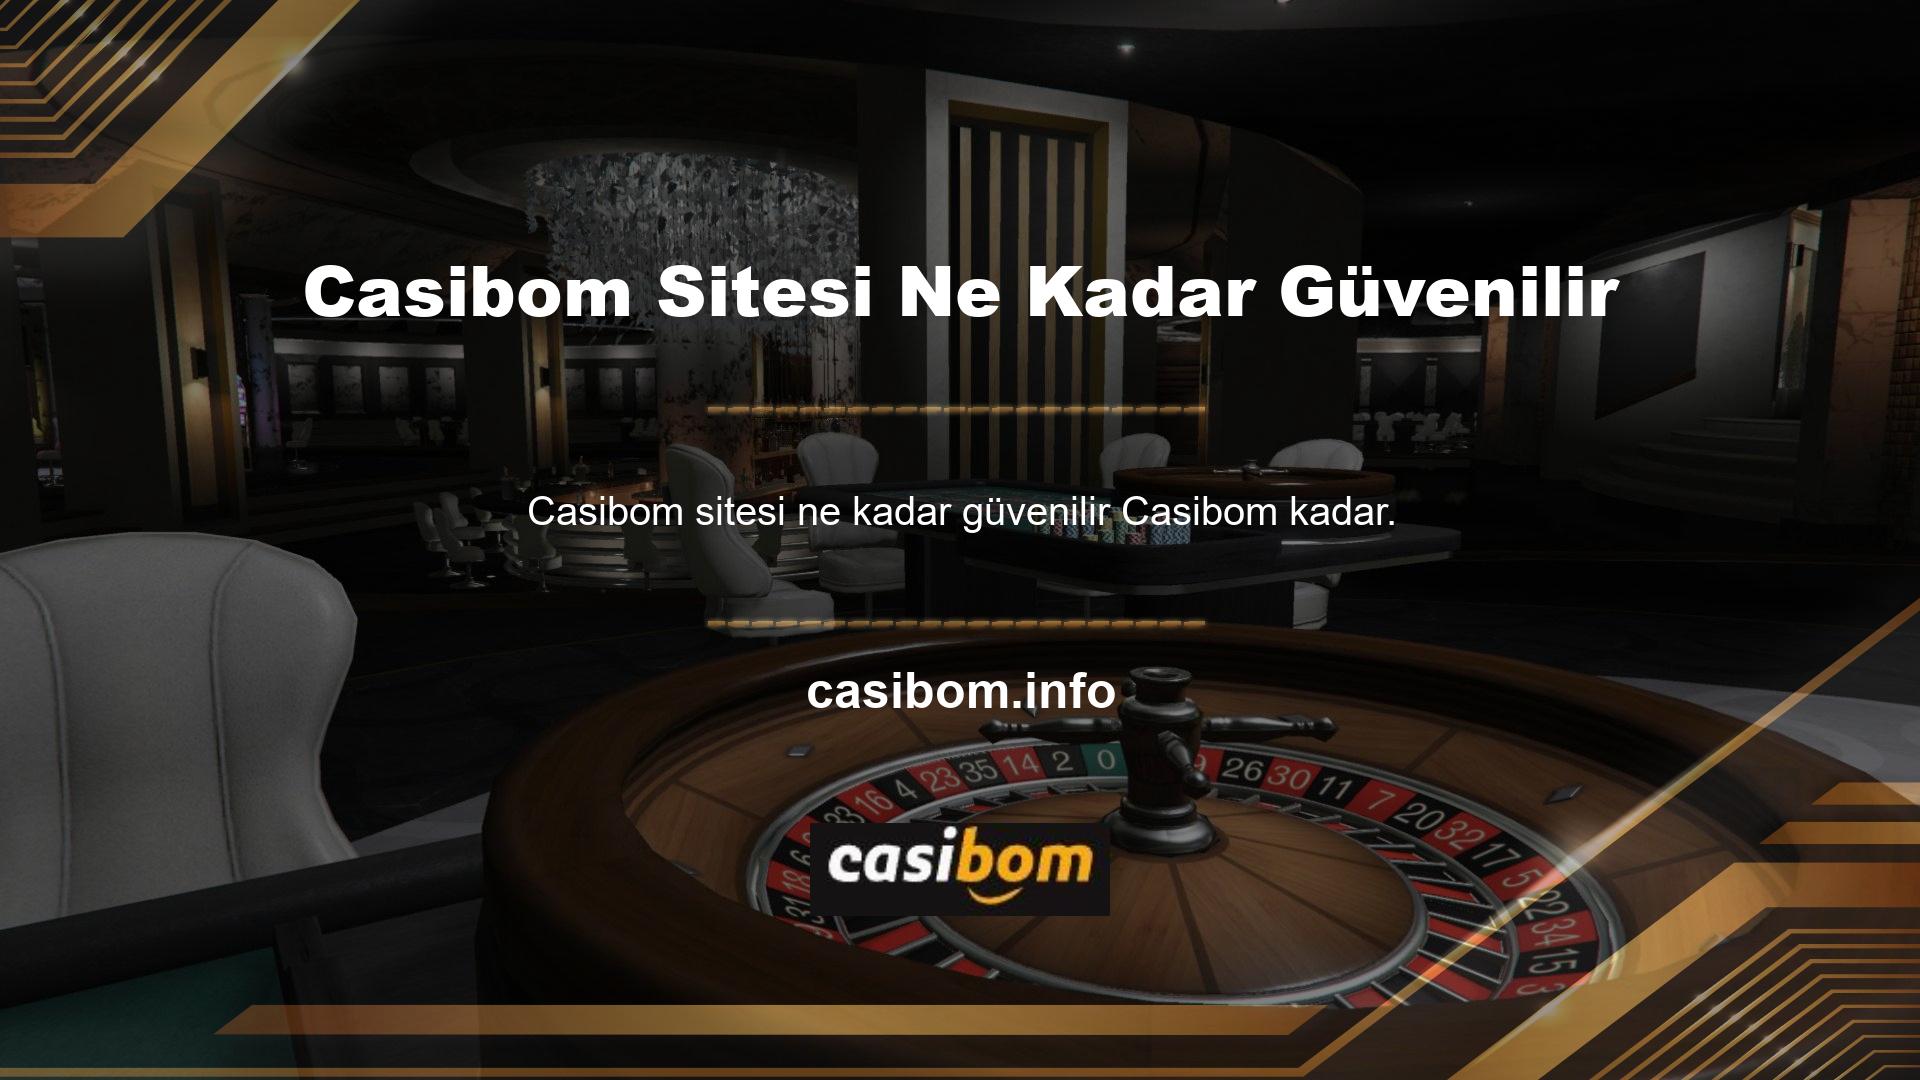 Canlı casino sitelerini zaten kapsamlı bir şekilde ele aldığımız için, sizin için kısa bir resmi rehber hazırladık